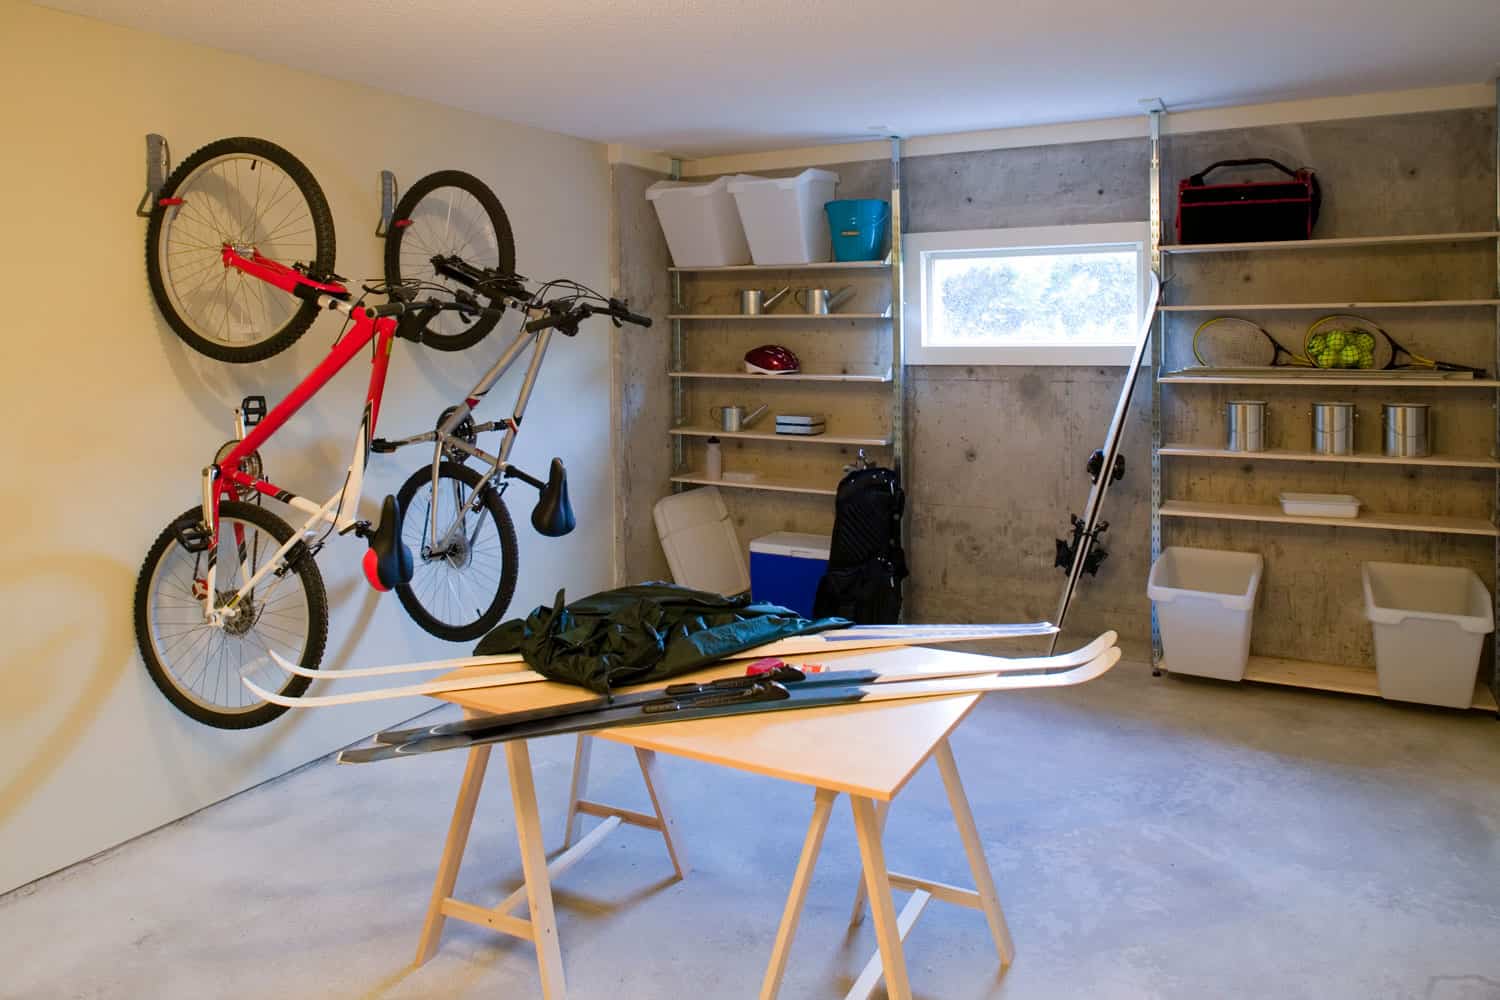 Basement house clutter garage storage